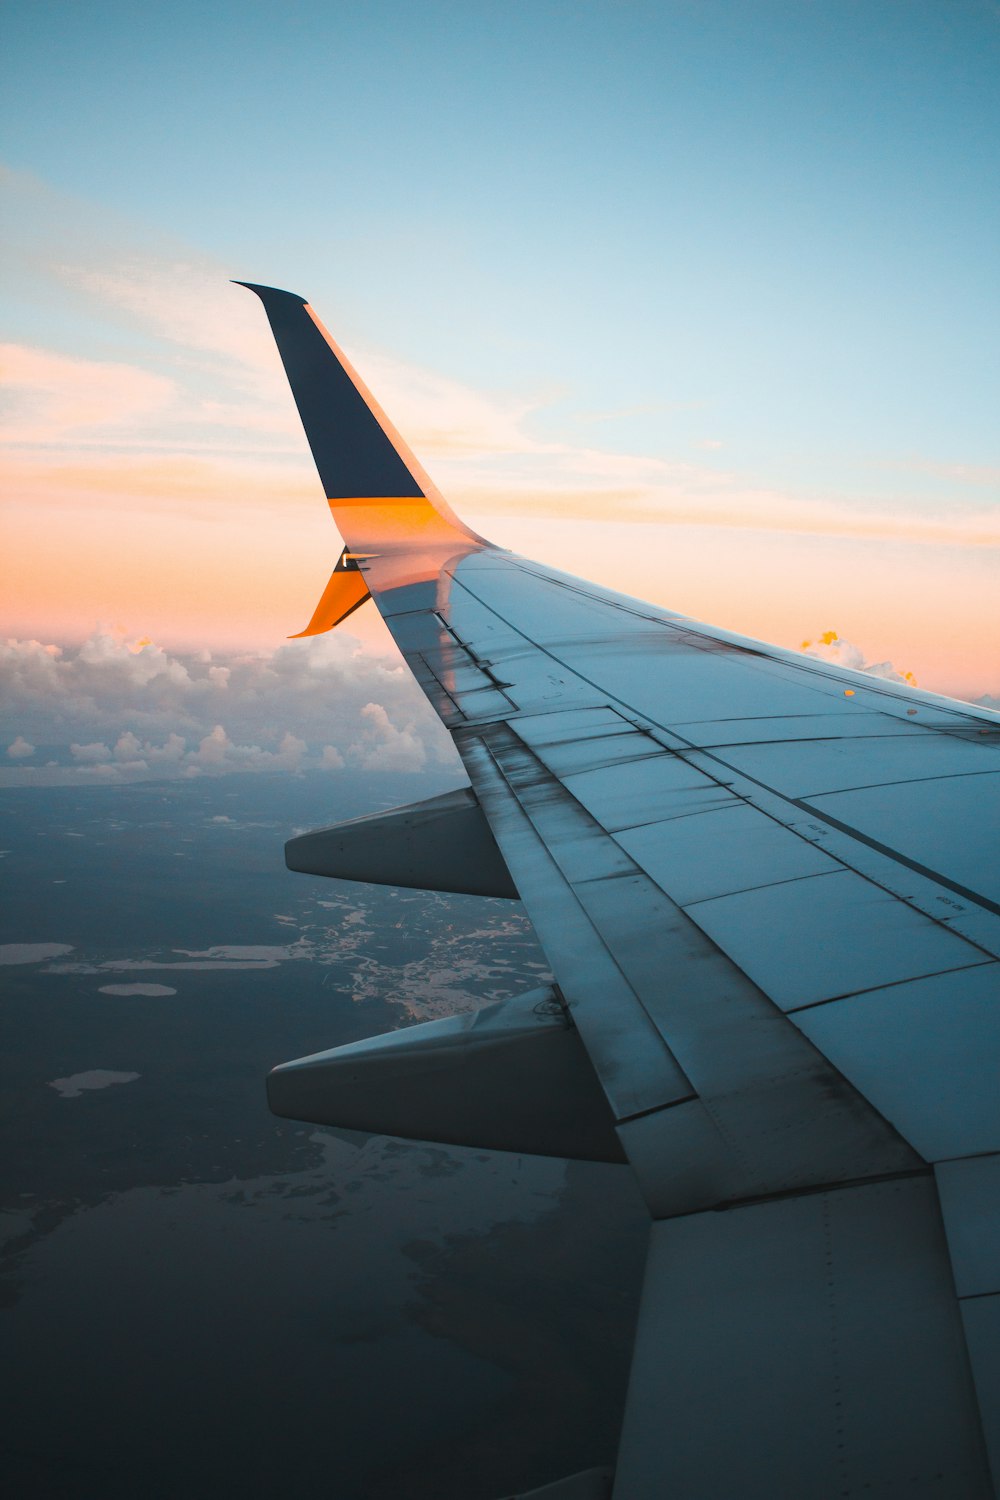 Vue de la fenêtre d’un avion en vol pendant la journée